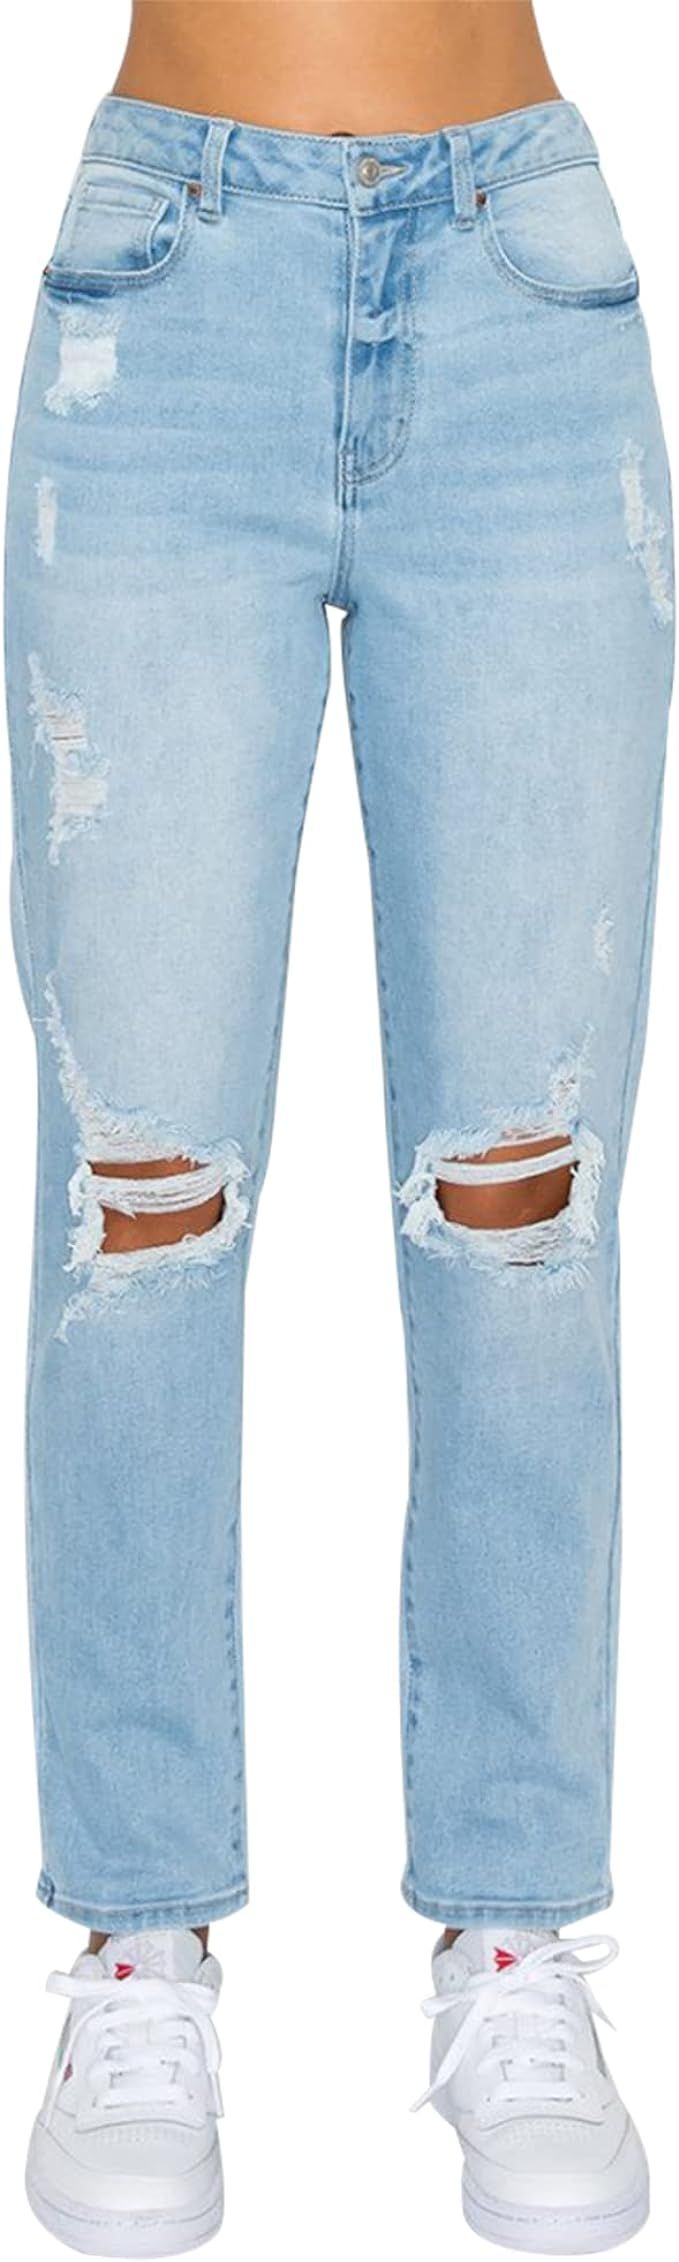 Little Vintage Girls Distressed Ripped Jeans for Women high Waist mom Jeans Boyfriend Jean,Wax Je... | Amazon (US)